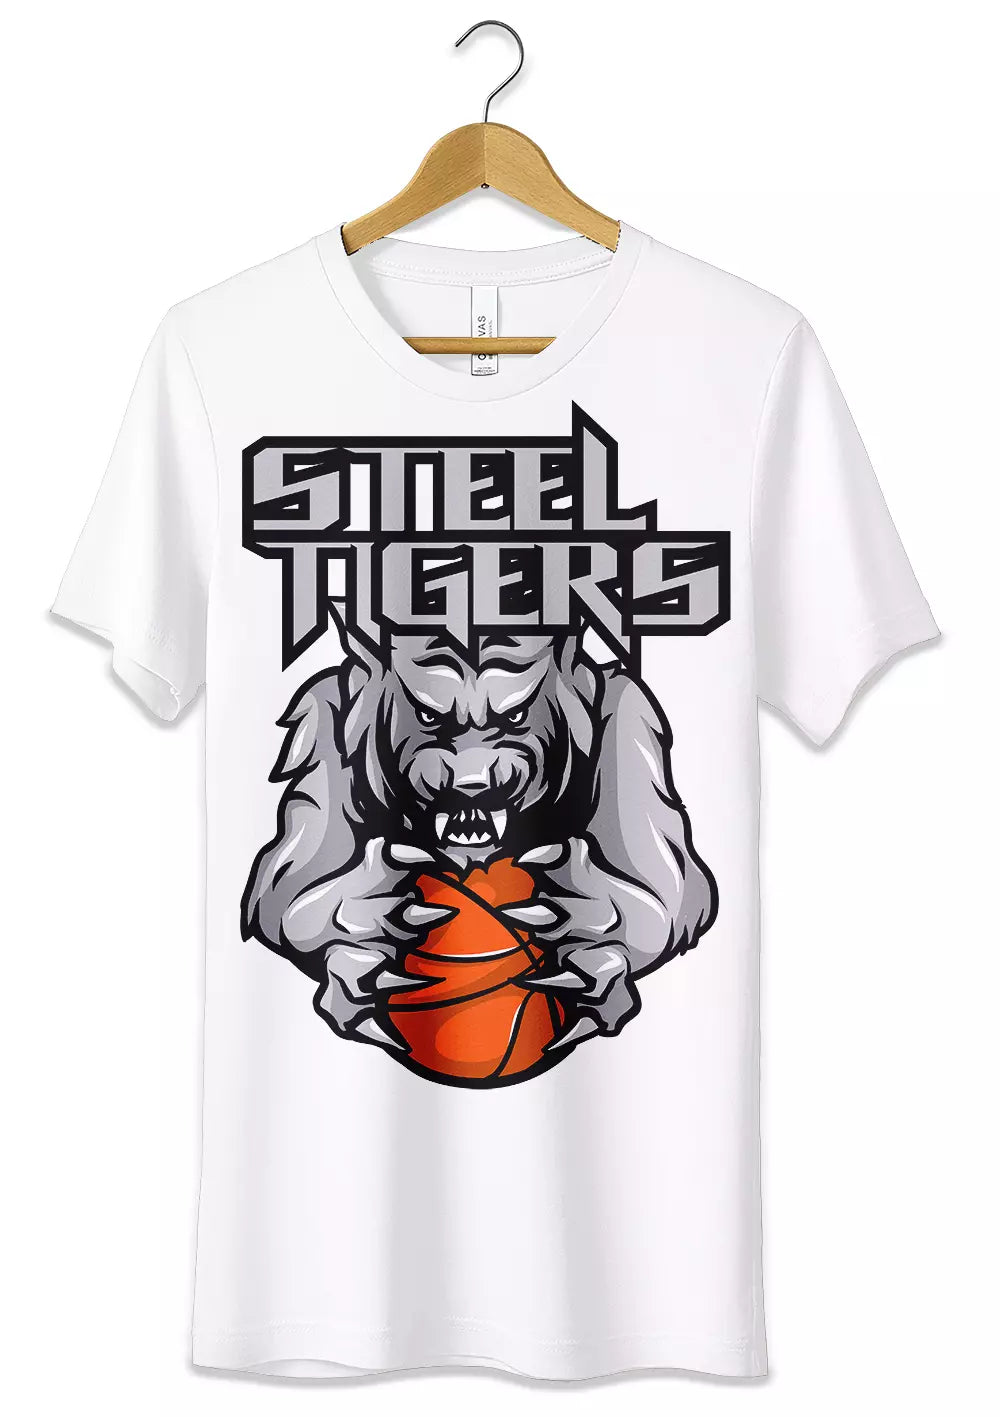 T-Shirt Maglietta Steel Tigers Urban Style Unisex, CmrDesignStore, T-Shirt, t-shirt-maglietta-steel-tigers-urban-style-unisex, CmrDesignStore